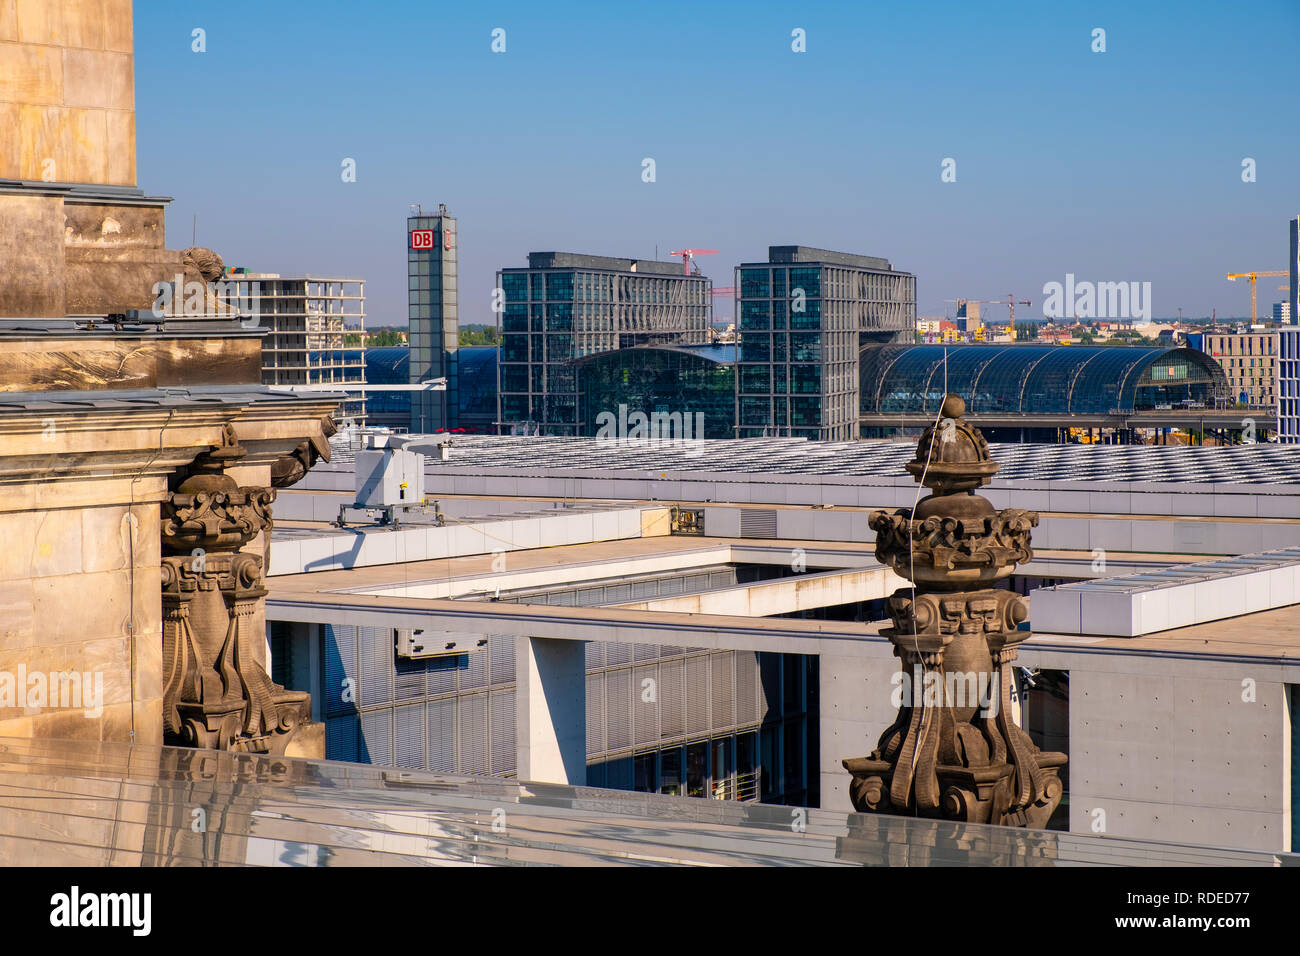 Berlin, Berlin stato / Germania - 2018/07/31: vista panoramica della parte nord della città con la stazione ferroviaria principale - Hauptbahnohof - presso il fiume Spree Foto Stock